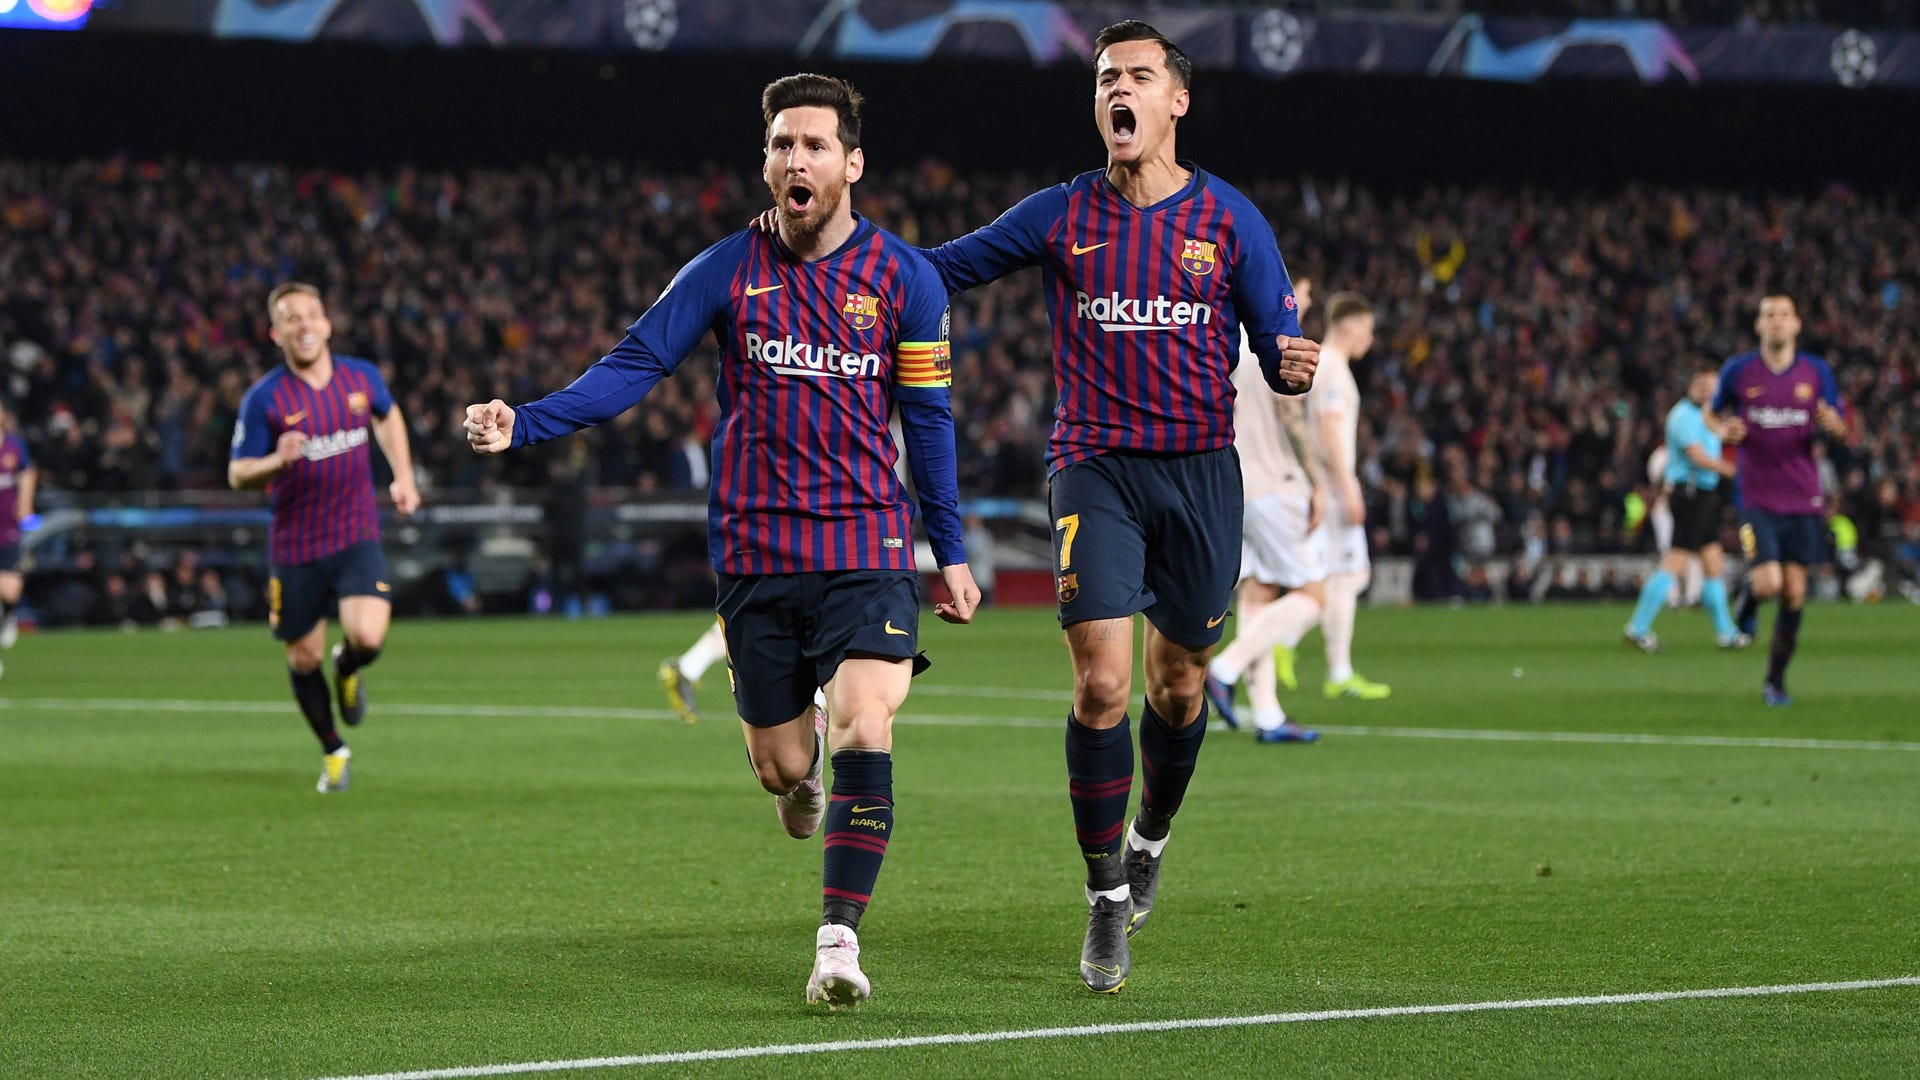 Xem Messi đá bóng sẽ khiến bạn ngạc nhiên với kỹ thuật tinh tế và sự khéo léo của ngôi sao này. Chiêm ngưỡng các chiêu thức đẳng cấp của Messi và cảm nhận niềm vui bất tận mà bóng đá mang lại.